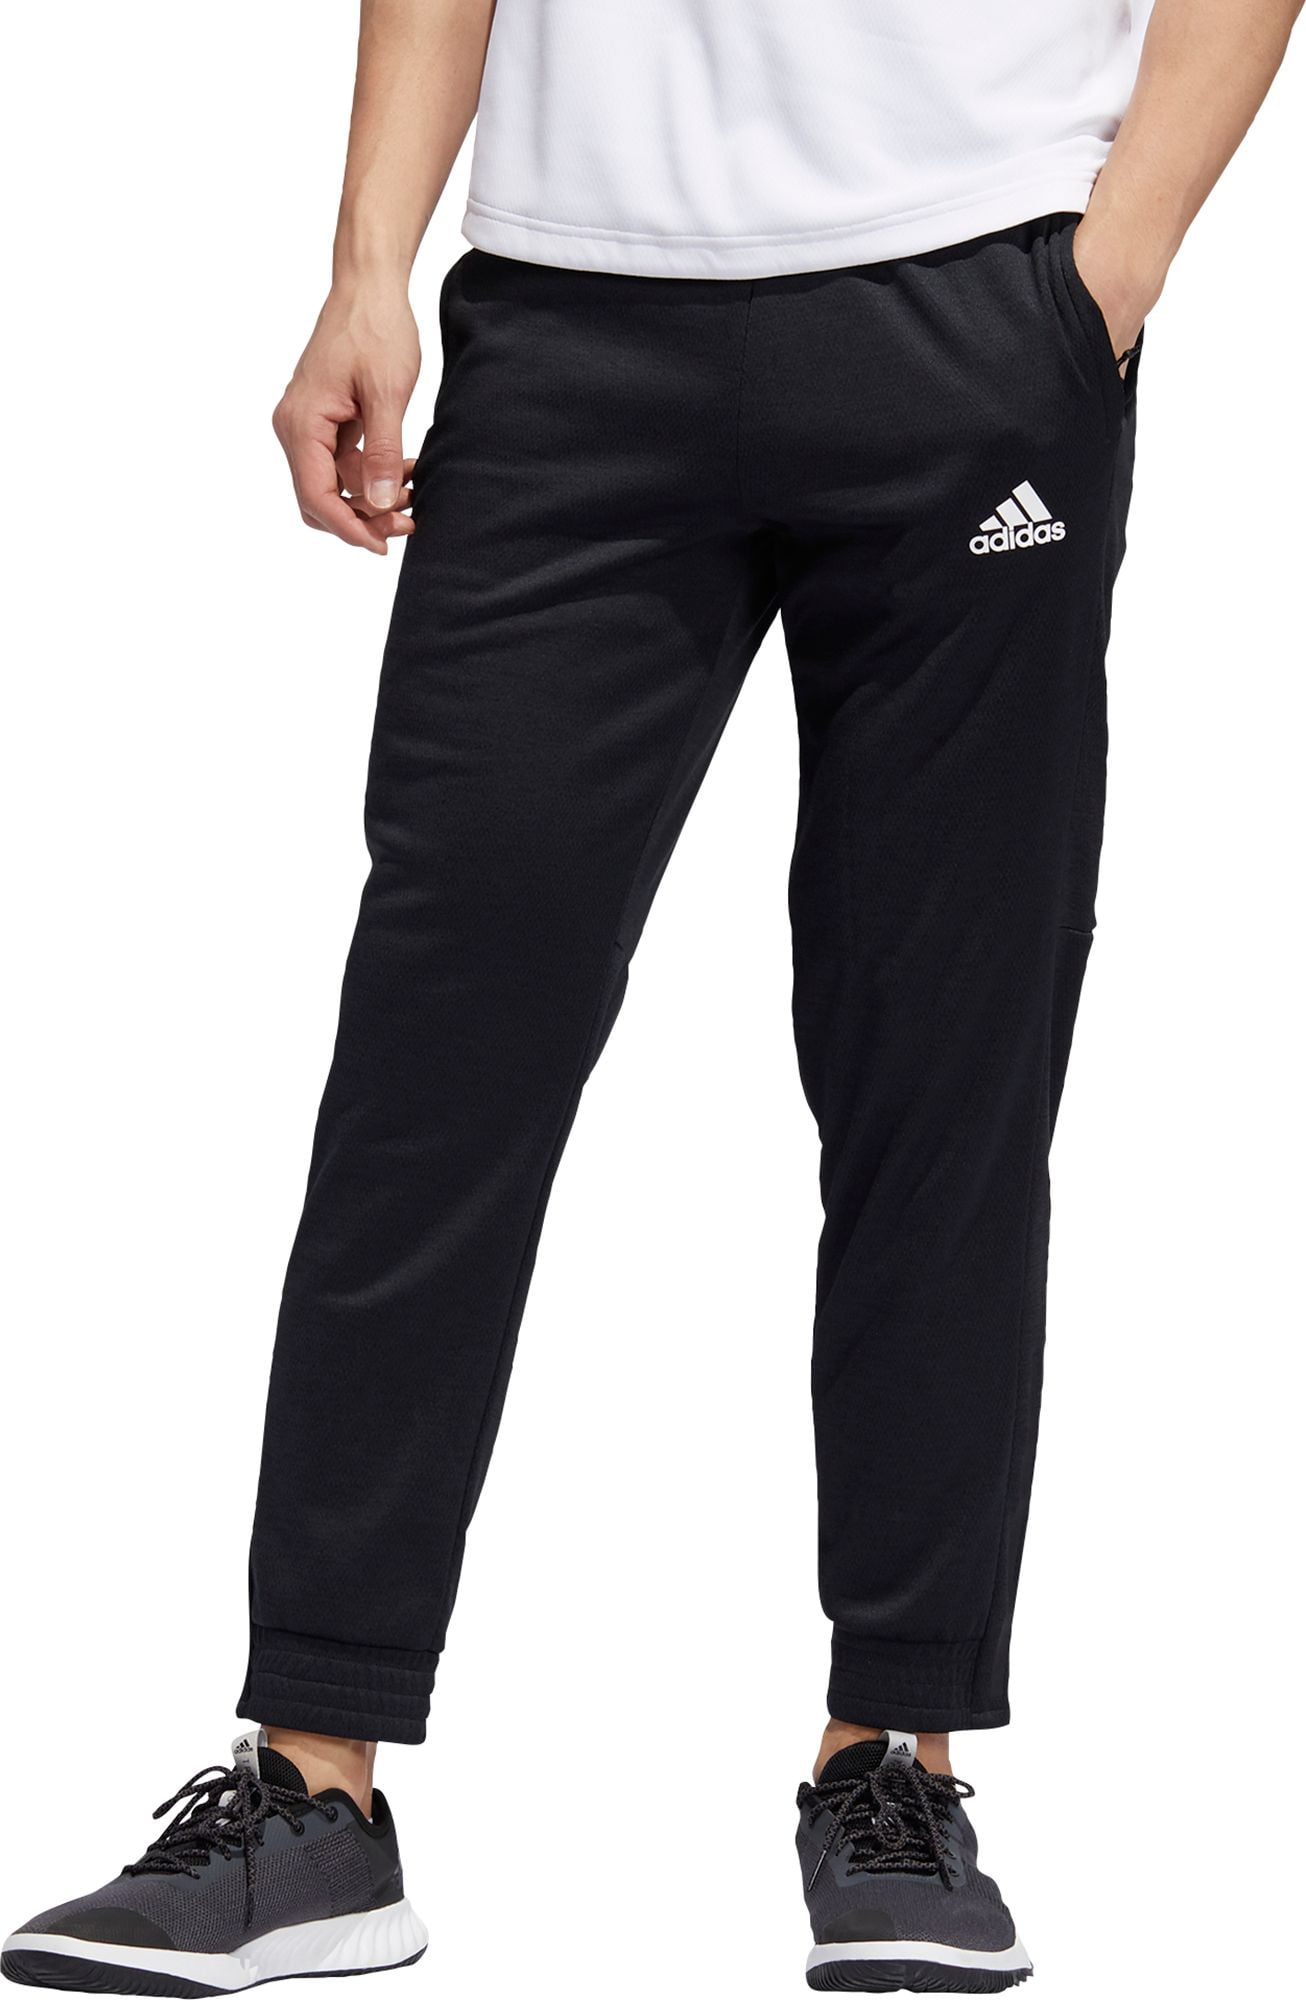 Adidas - adidas Men's Team Issue Jogger Pants - Walmart.com - Walmart.com